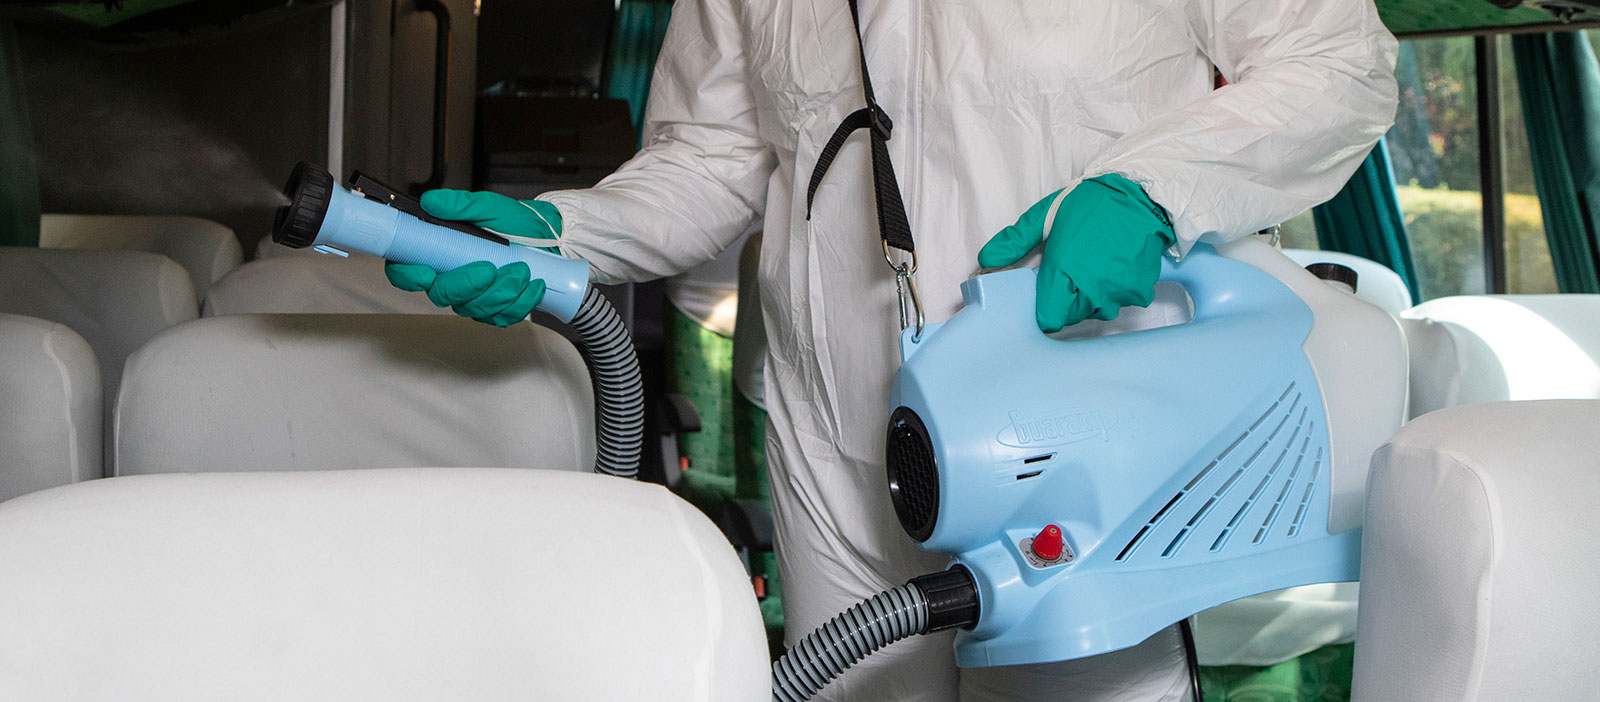 El colorante artificial podría usarse para desinfectar el aire del COVID-19